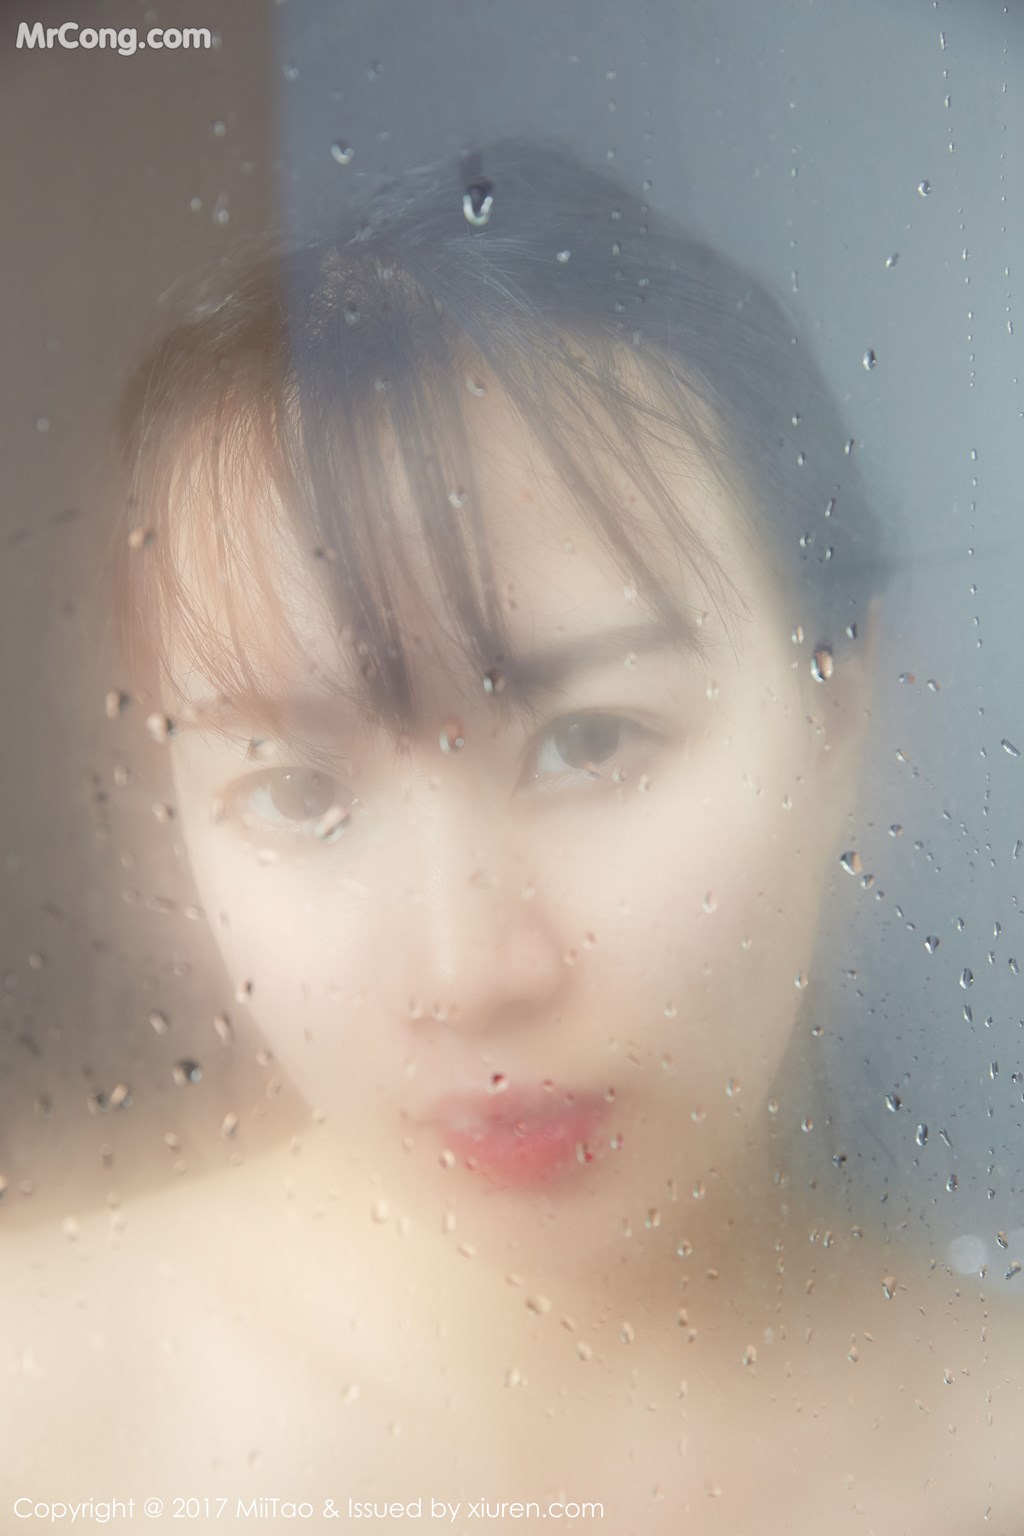 MiiTao Vol.087: Model Wen Li (雯丽) (62 pictures)